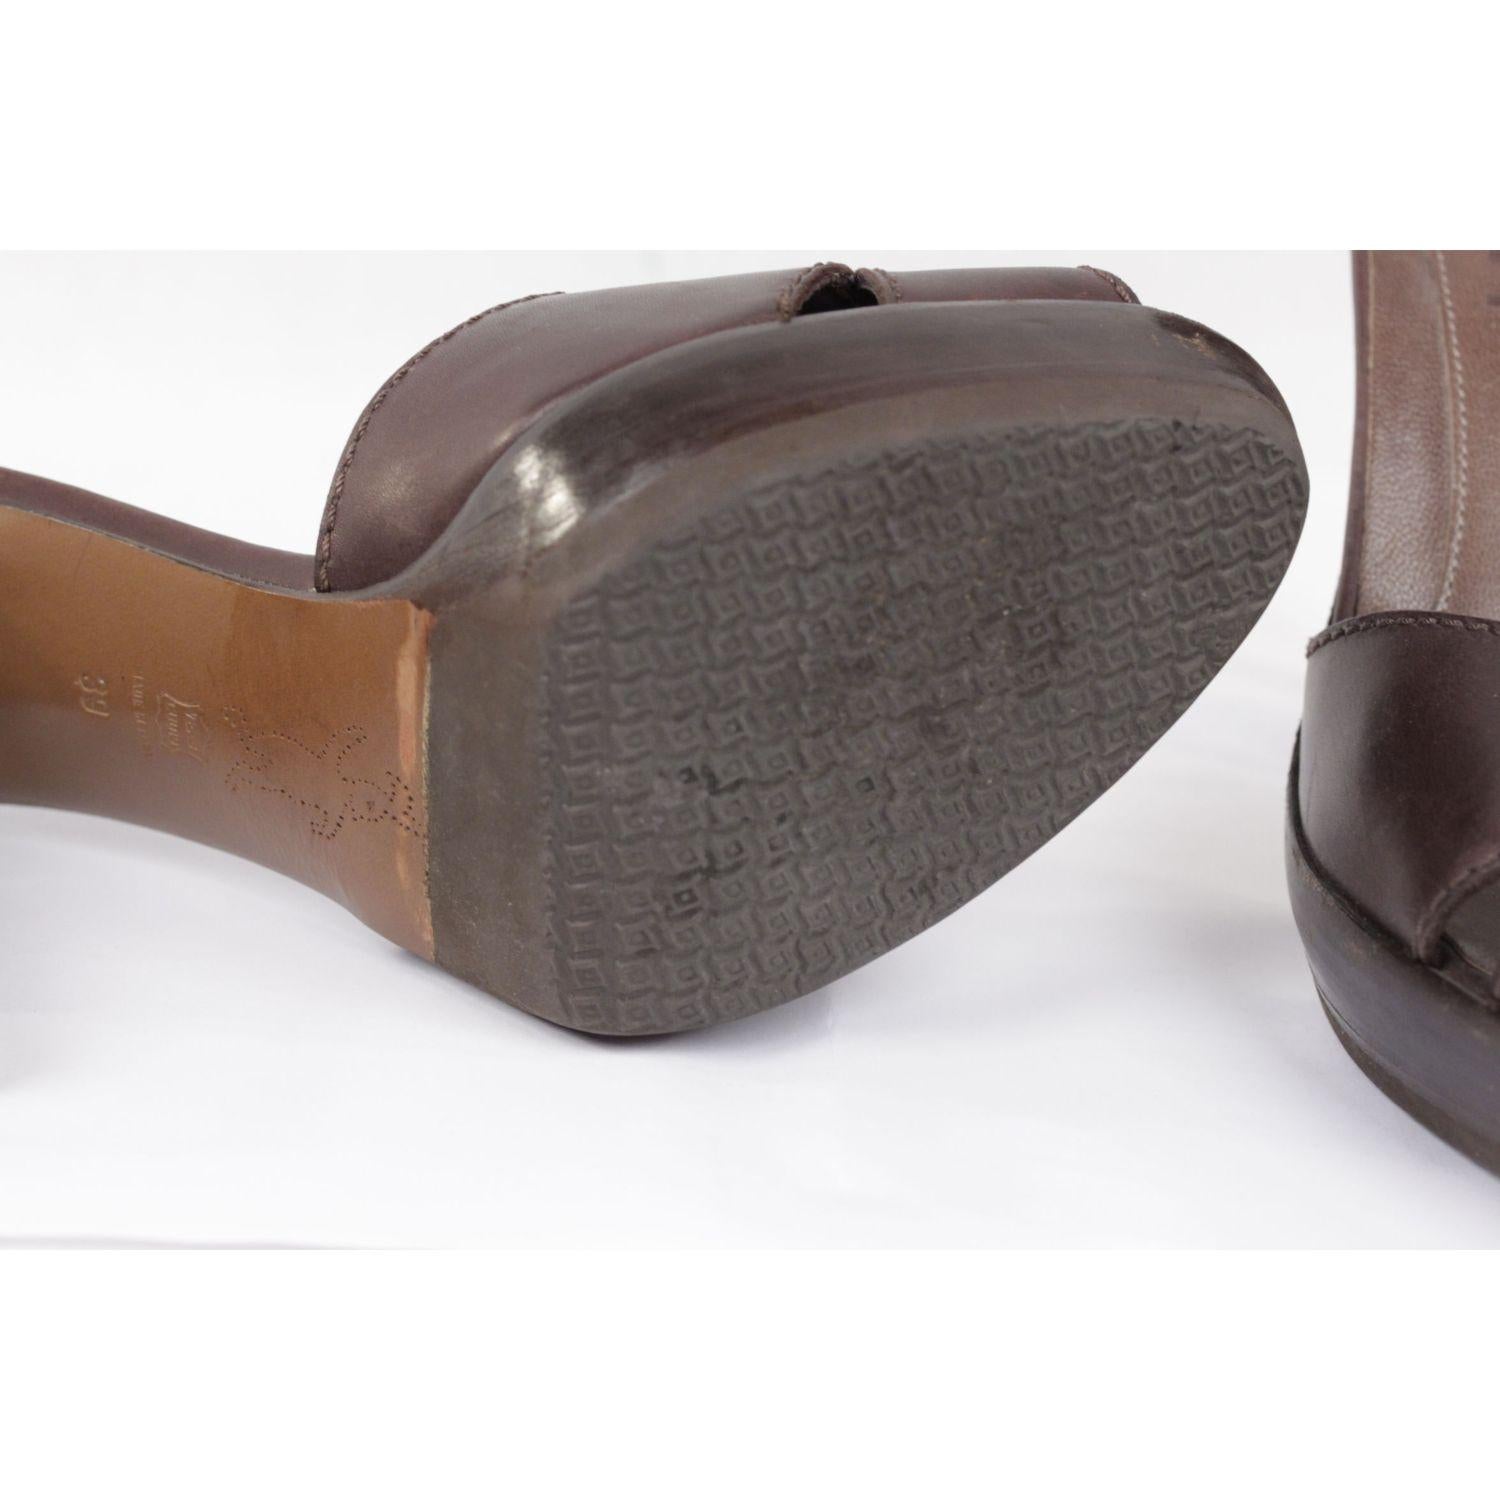 Black Marni Brown Leather Platform Sandals Heels Shoes Size 39